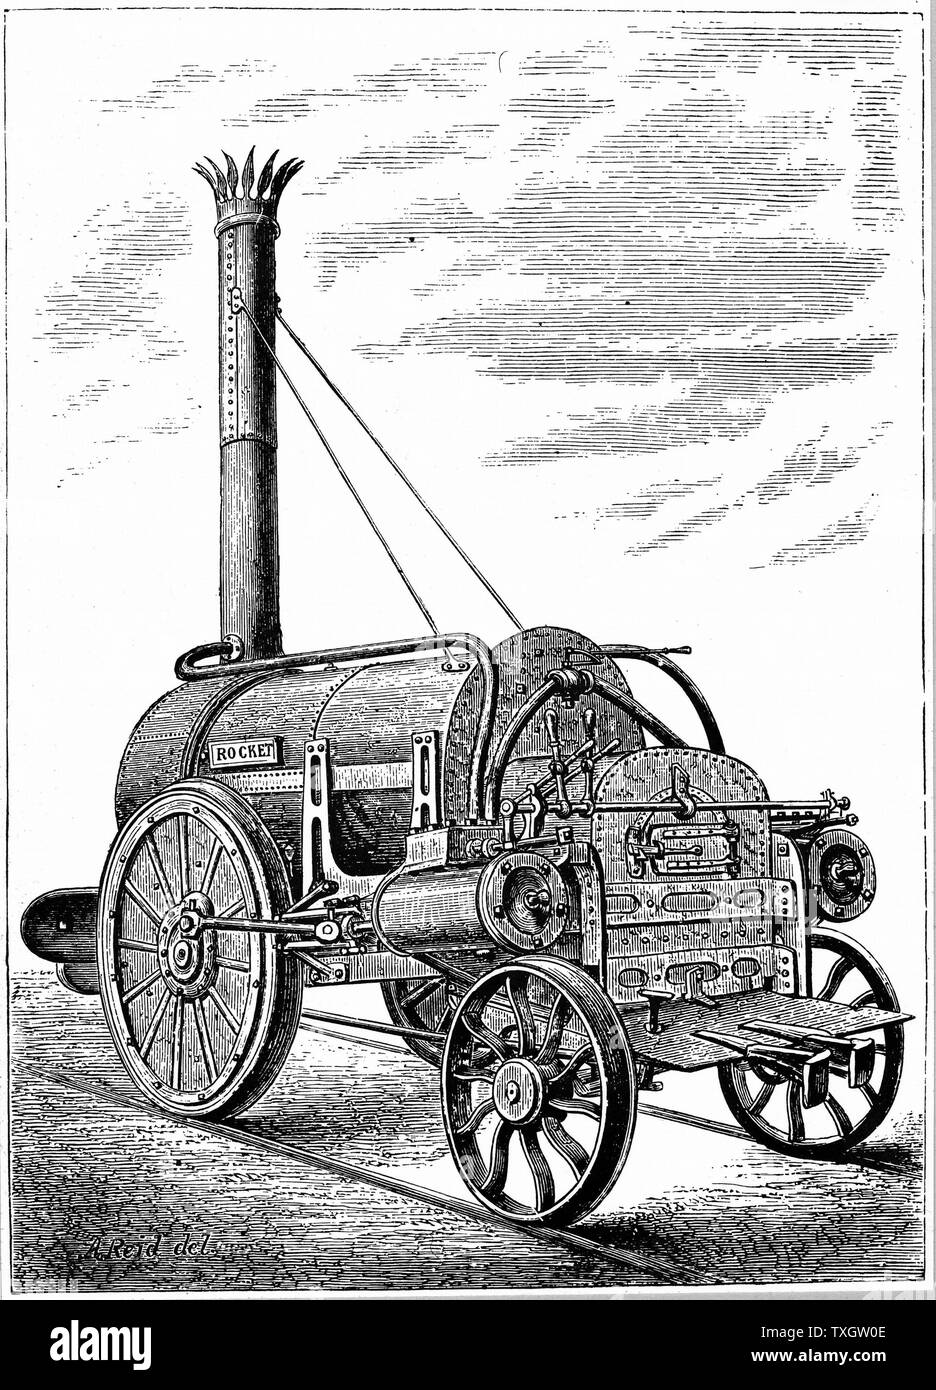 George Stephenson locomotive du 'Rocket' c1875 de la gravure sur bois Banque D'Images